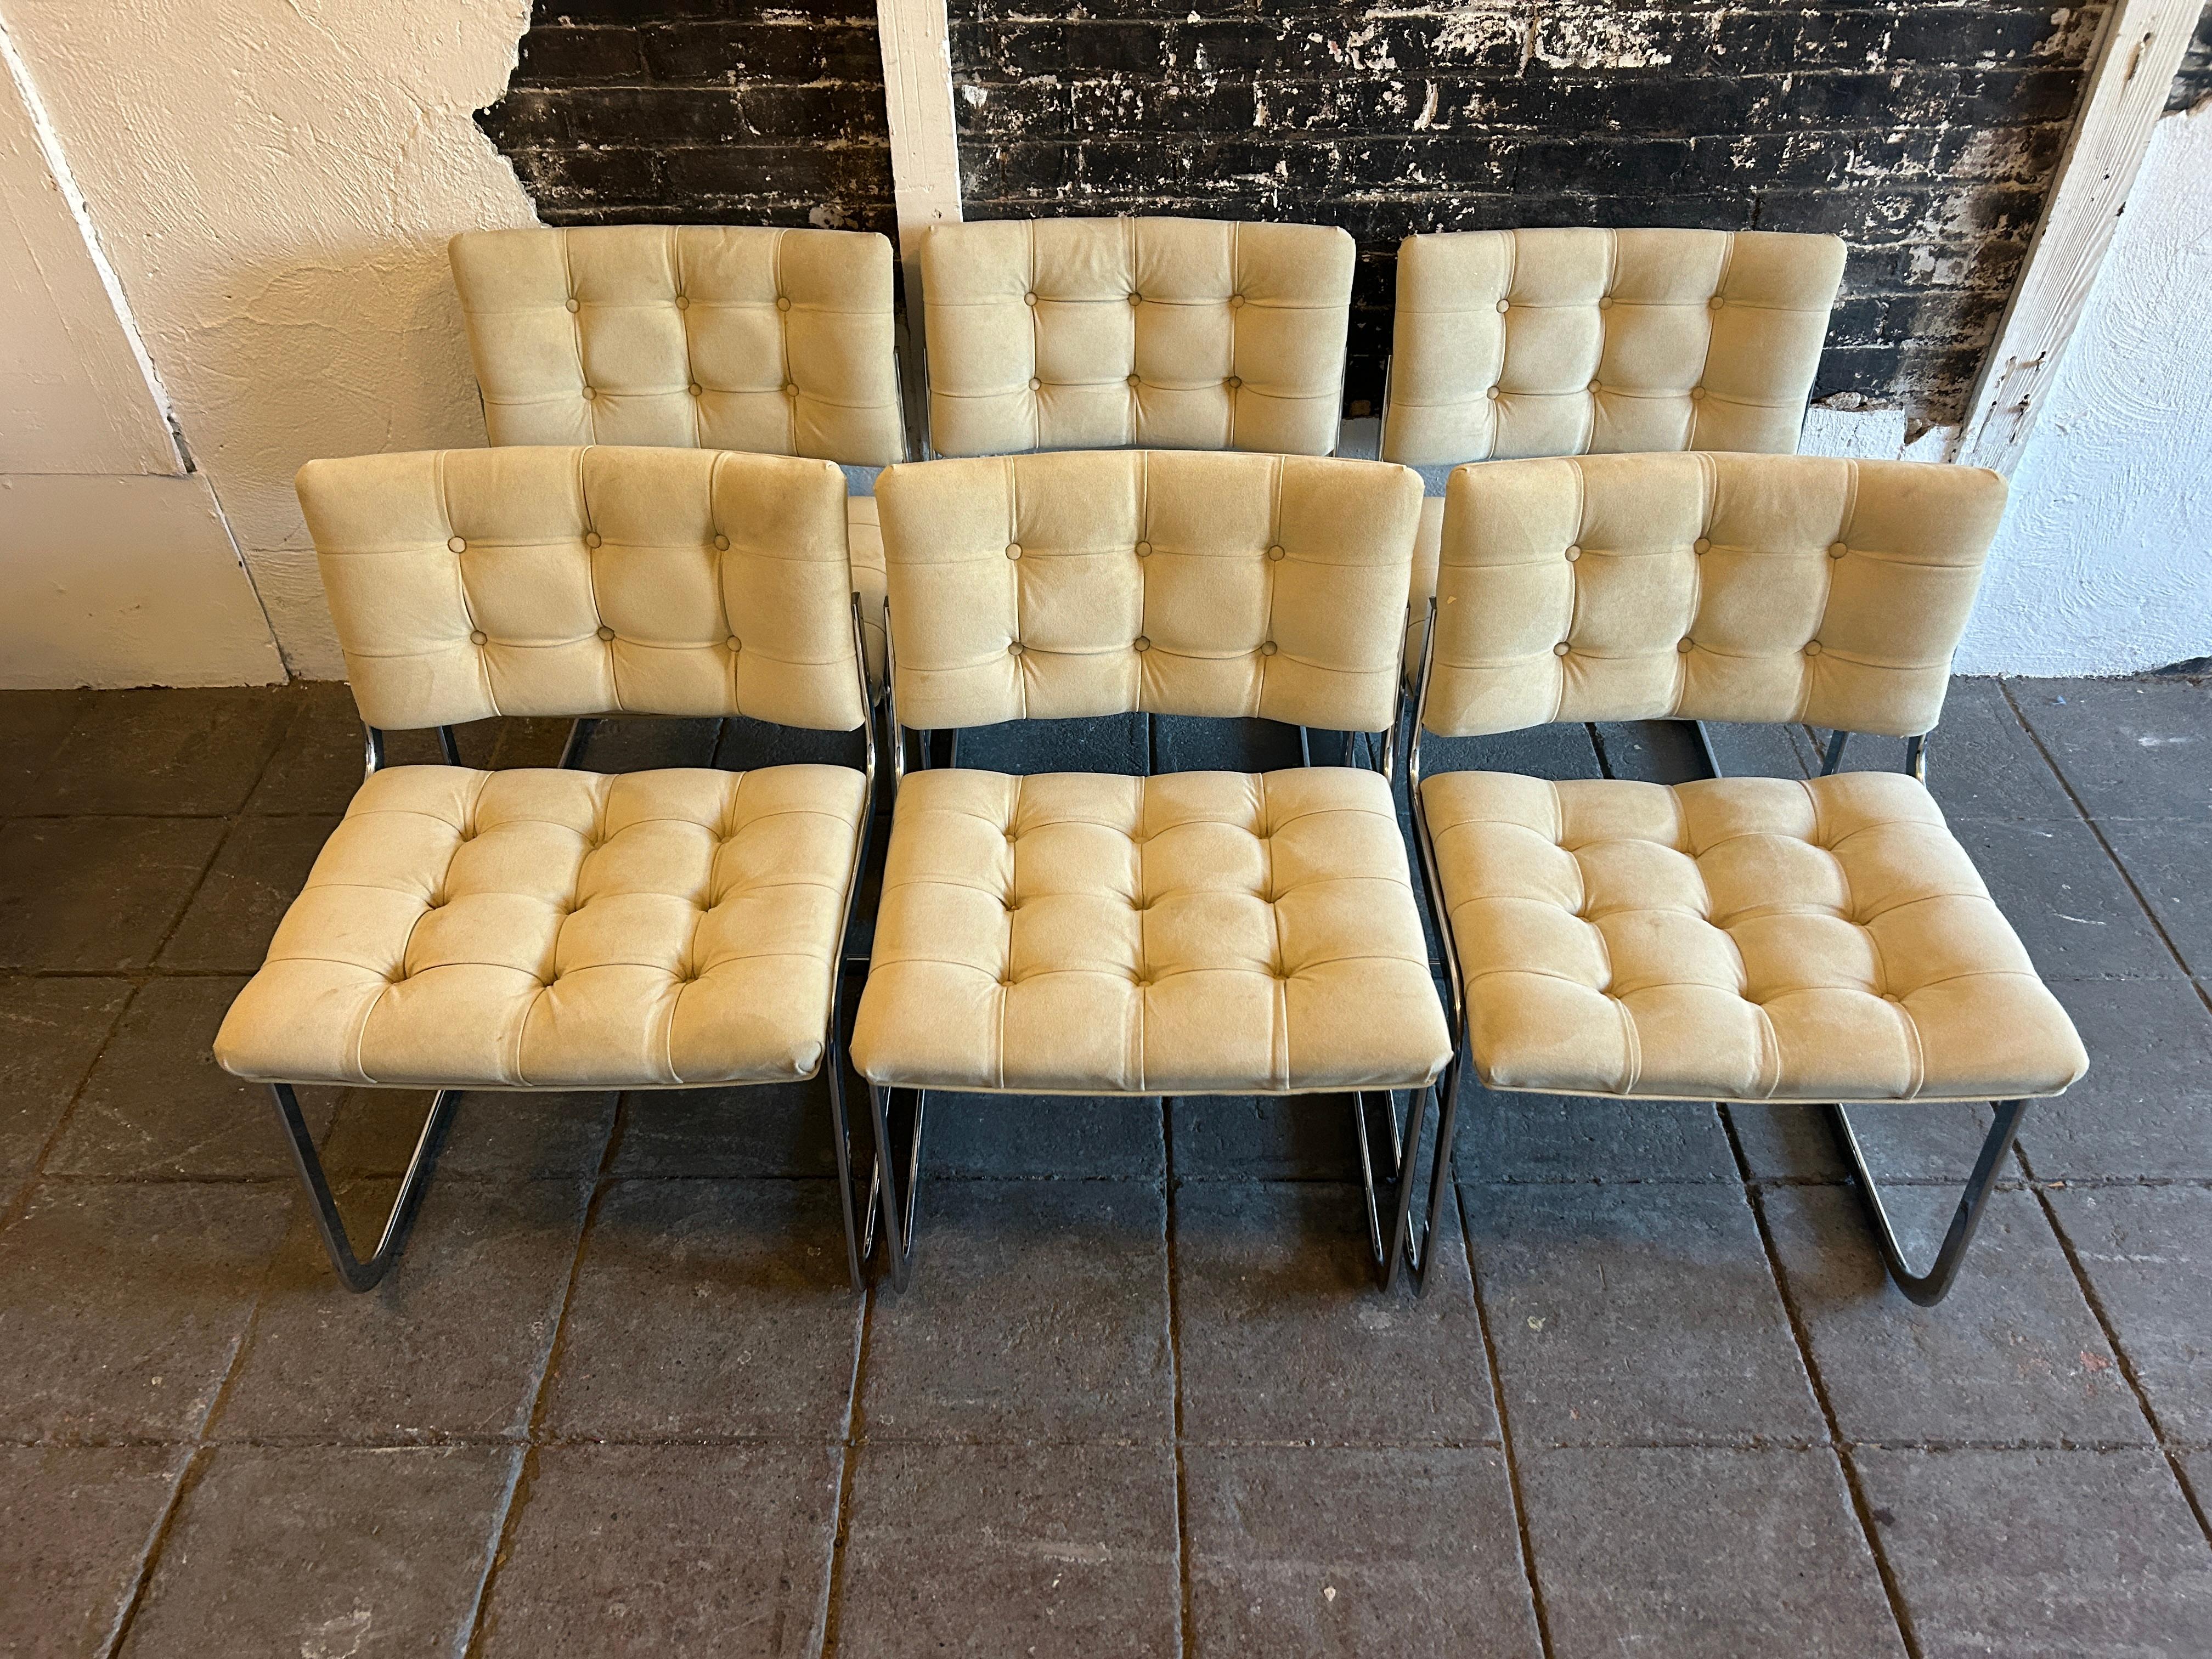 Un ensemble unique de 8 chaises RH-304 en daim/cuir, conçues par Robert Haussmann et fabriquées par Stendig De Sede. Cet ensemble a été fabriqué vers 1960. Ces chaises sont recouvertes de daim / cuir Tan clair. Les cadres en tube plat arrondi sont